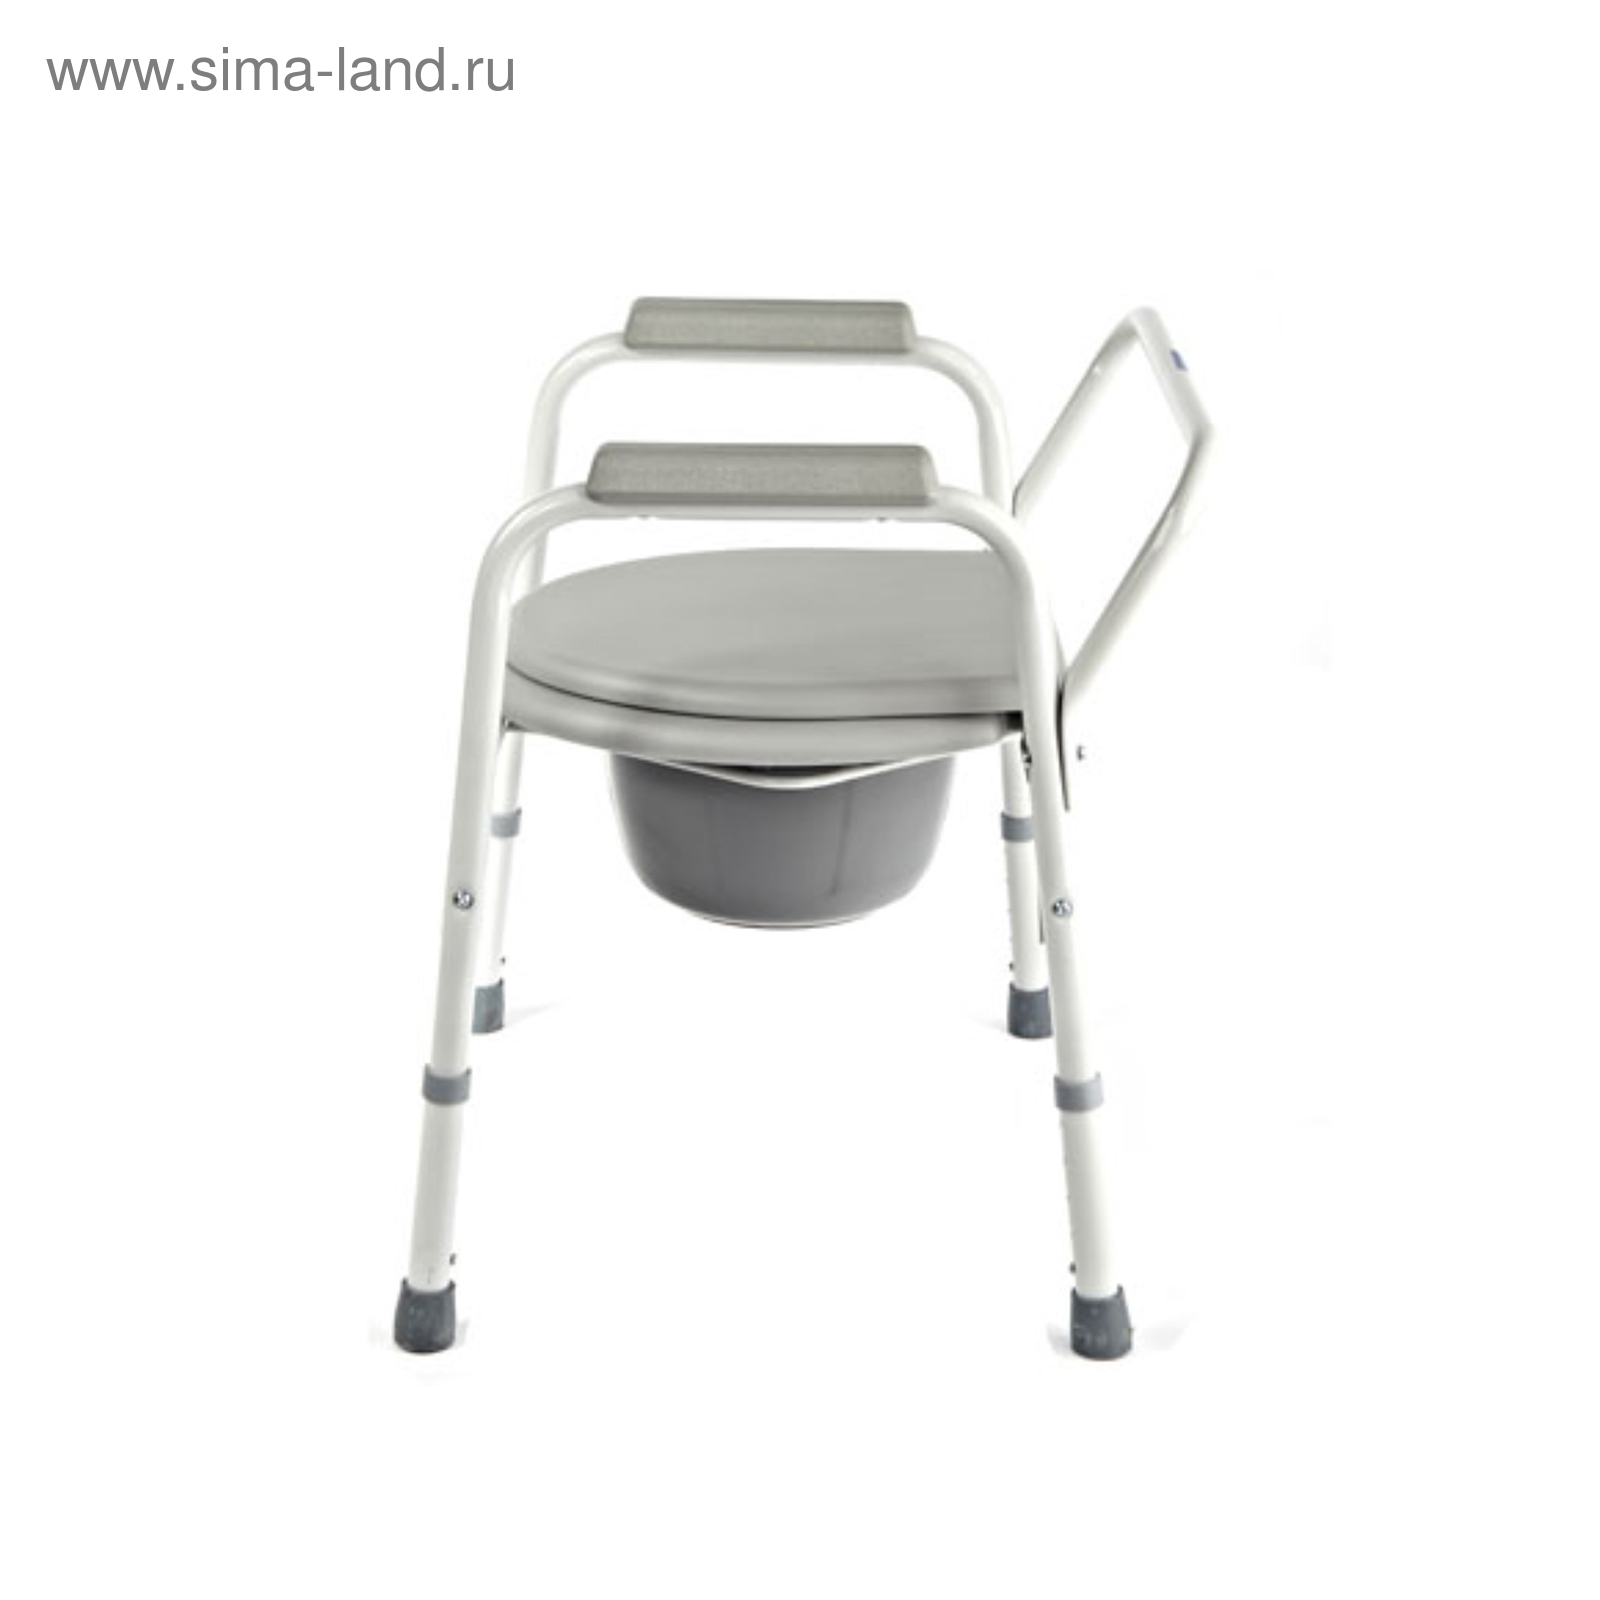 Кресло стул с санитарным оснащением повышенной грузоподъемности